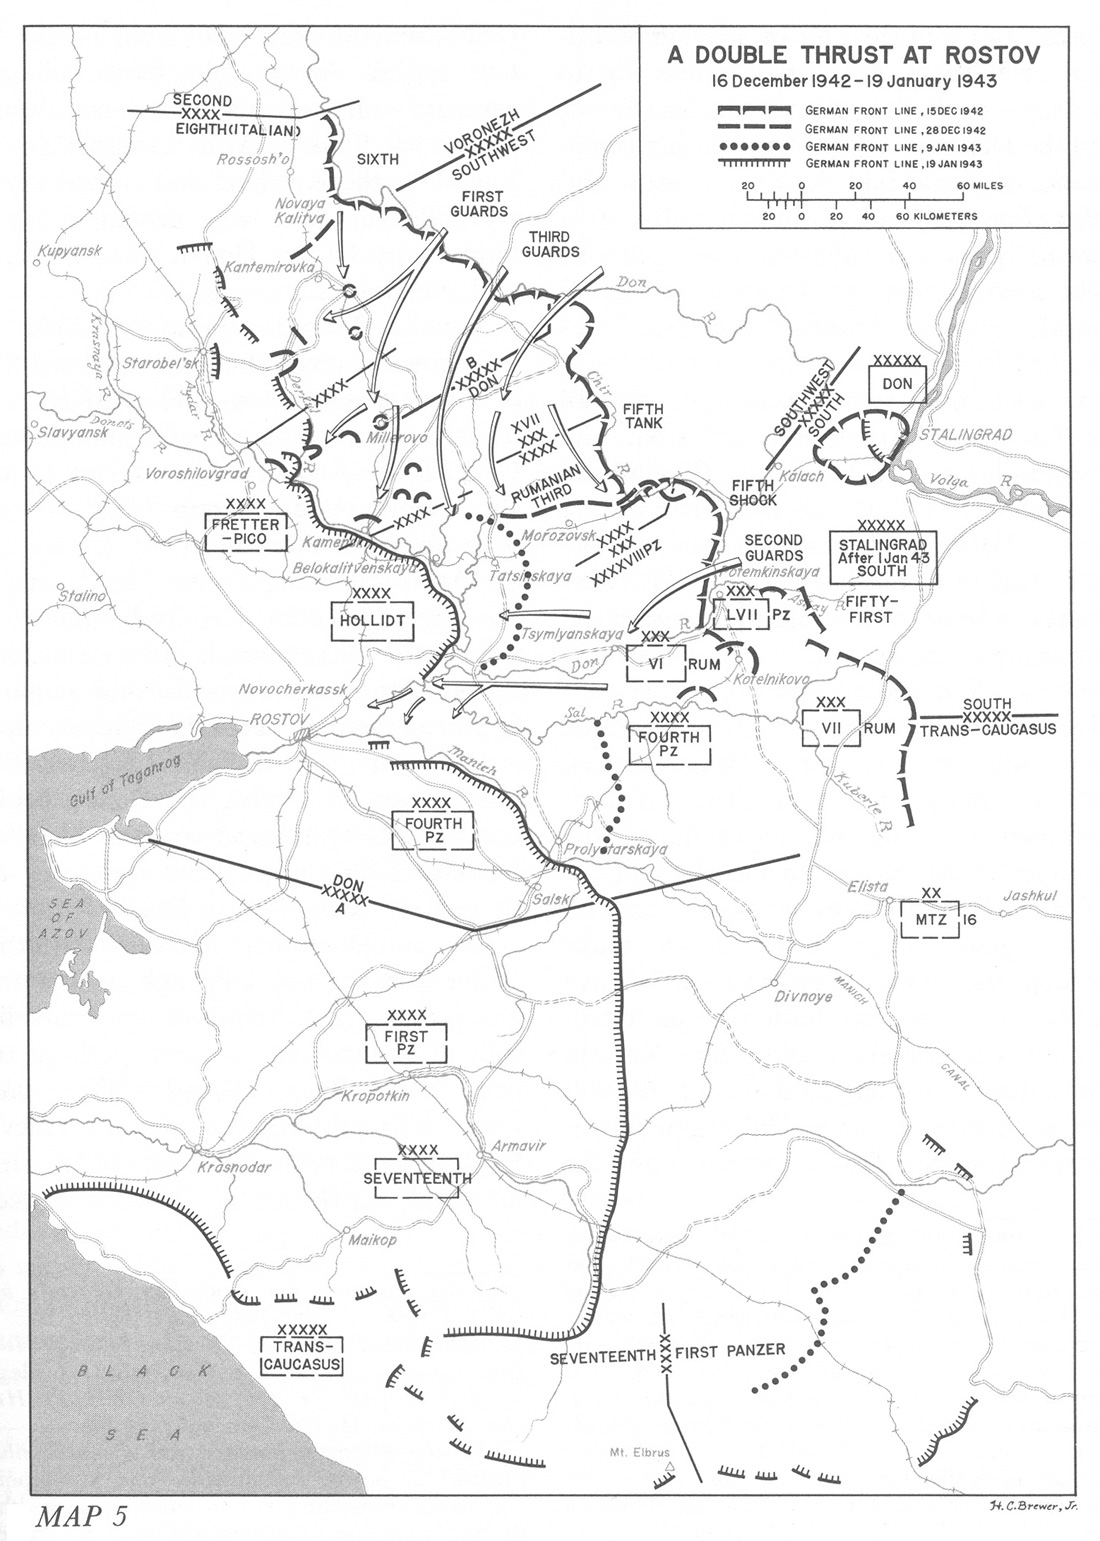 التشغيل العملياتى والهيكل التنظيمى لسلاح المدرعات السوفيتى فى الحرب العالمية الثانية USA-EF-Defeat-5